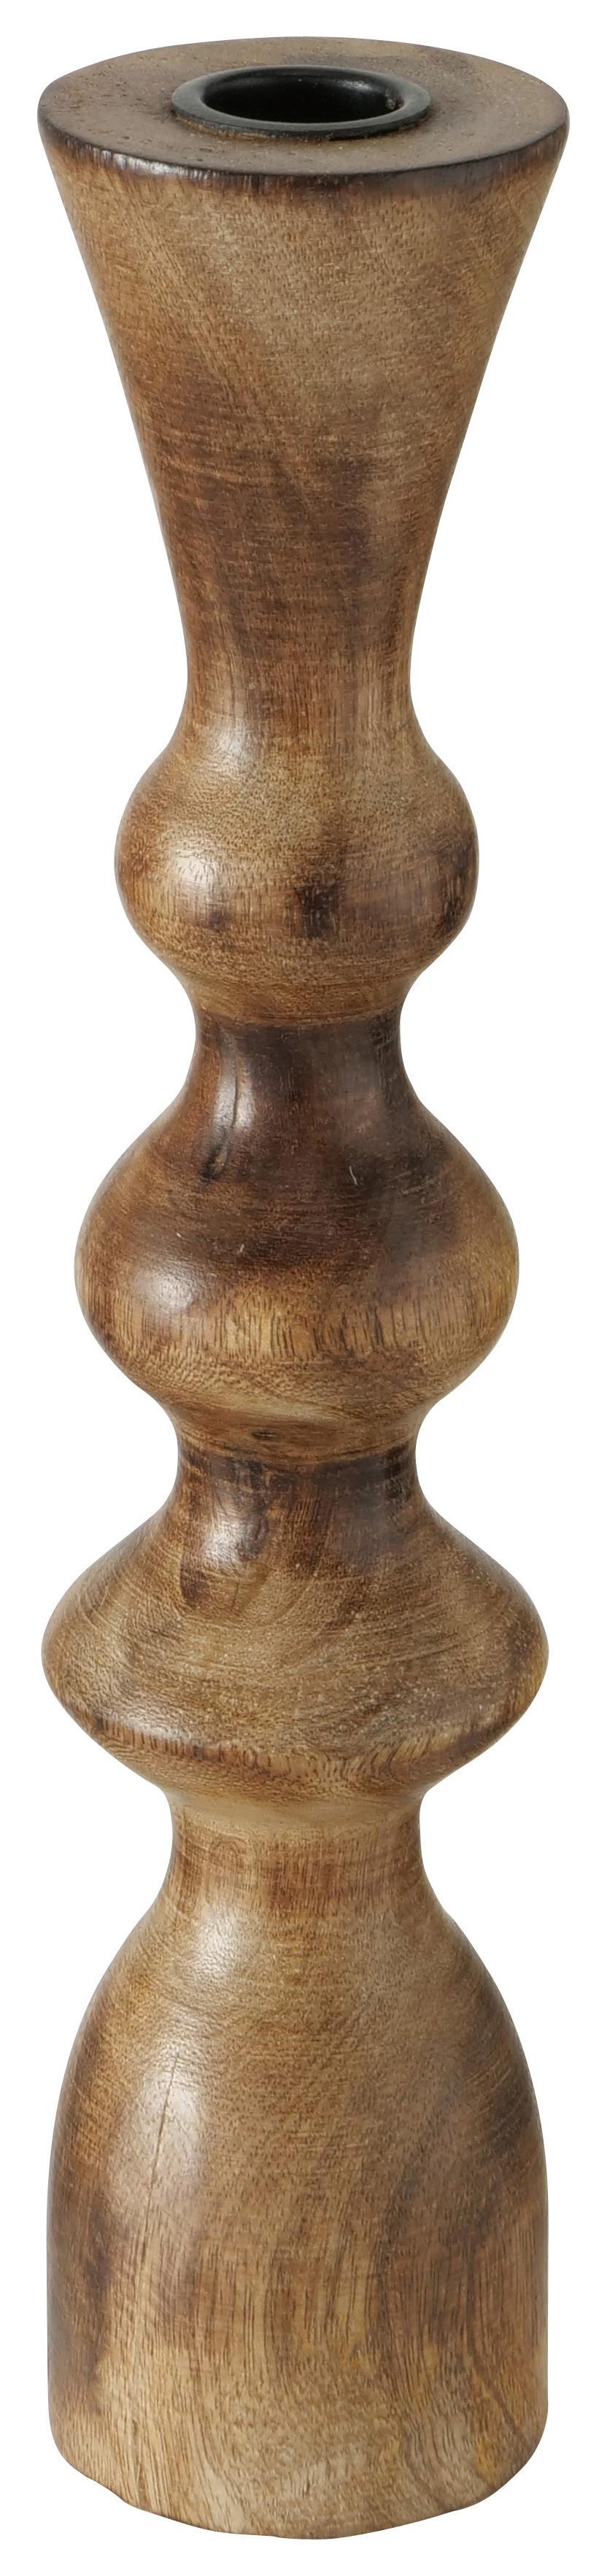 Stojan Na Dlouhé Svíčky Caconda, V: 30cm - přírodní barvy, Lifestyle, dřevo (8/30/8cm) - Premium Living